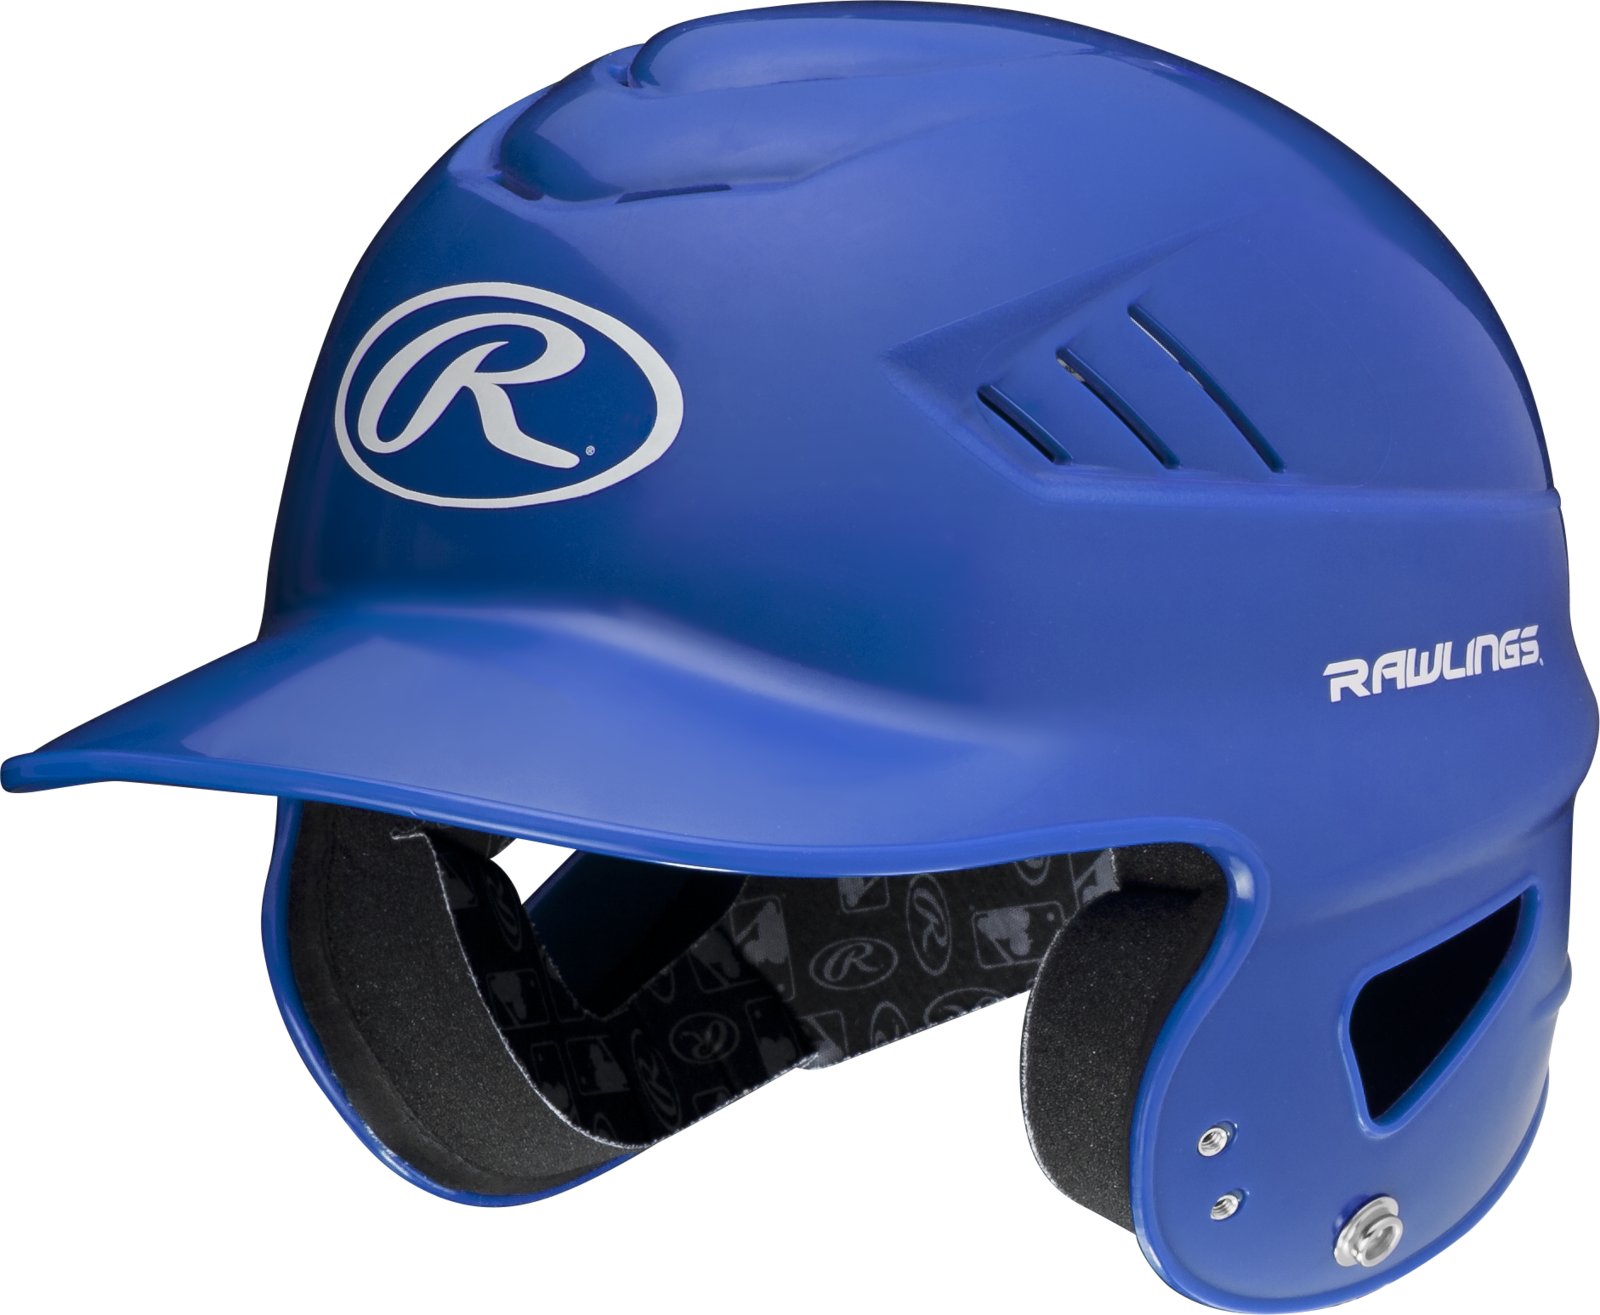 Rawlings Coolflo Batting Helmet - Baseball Helmet (1600x1315), Png Download